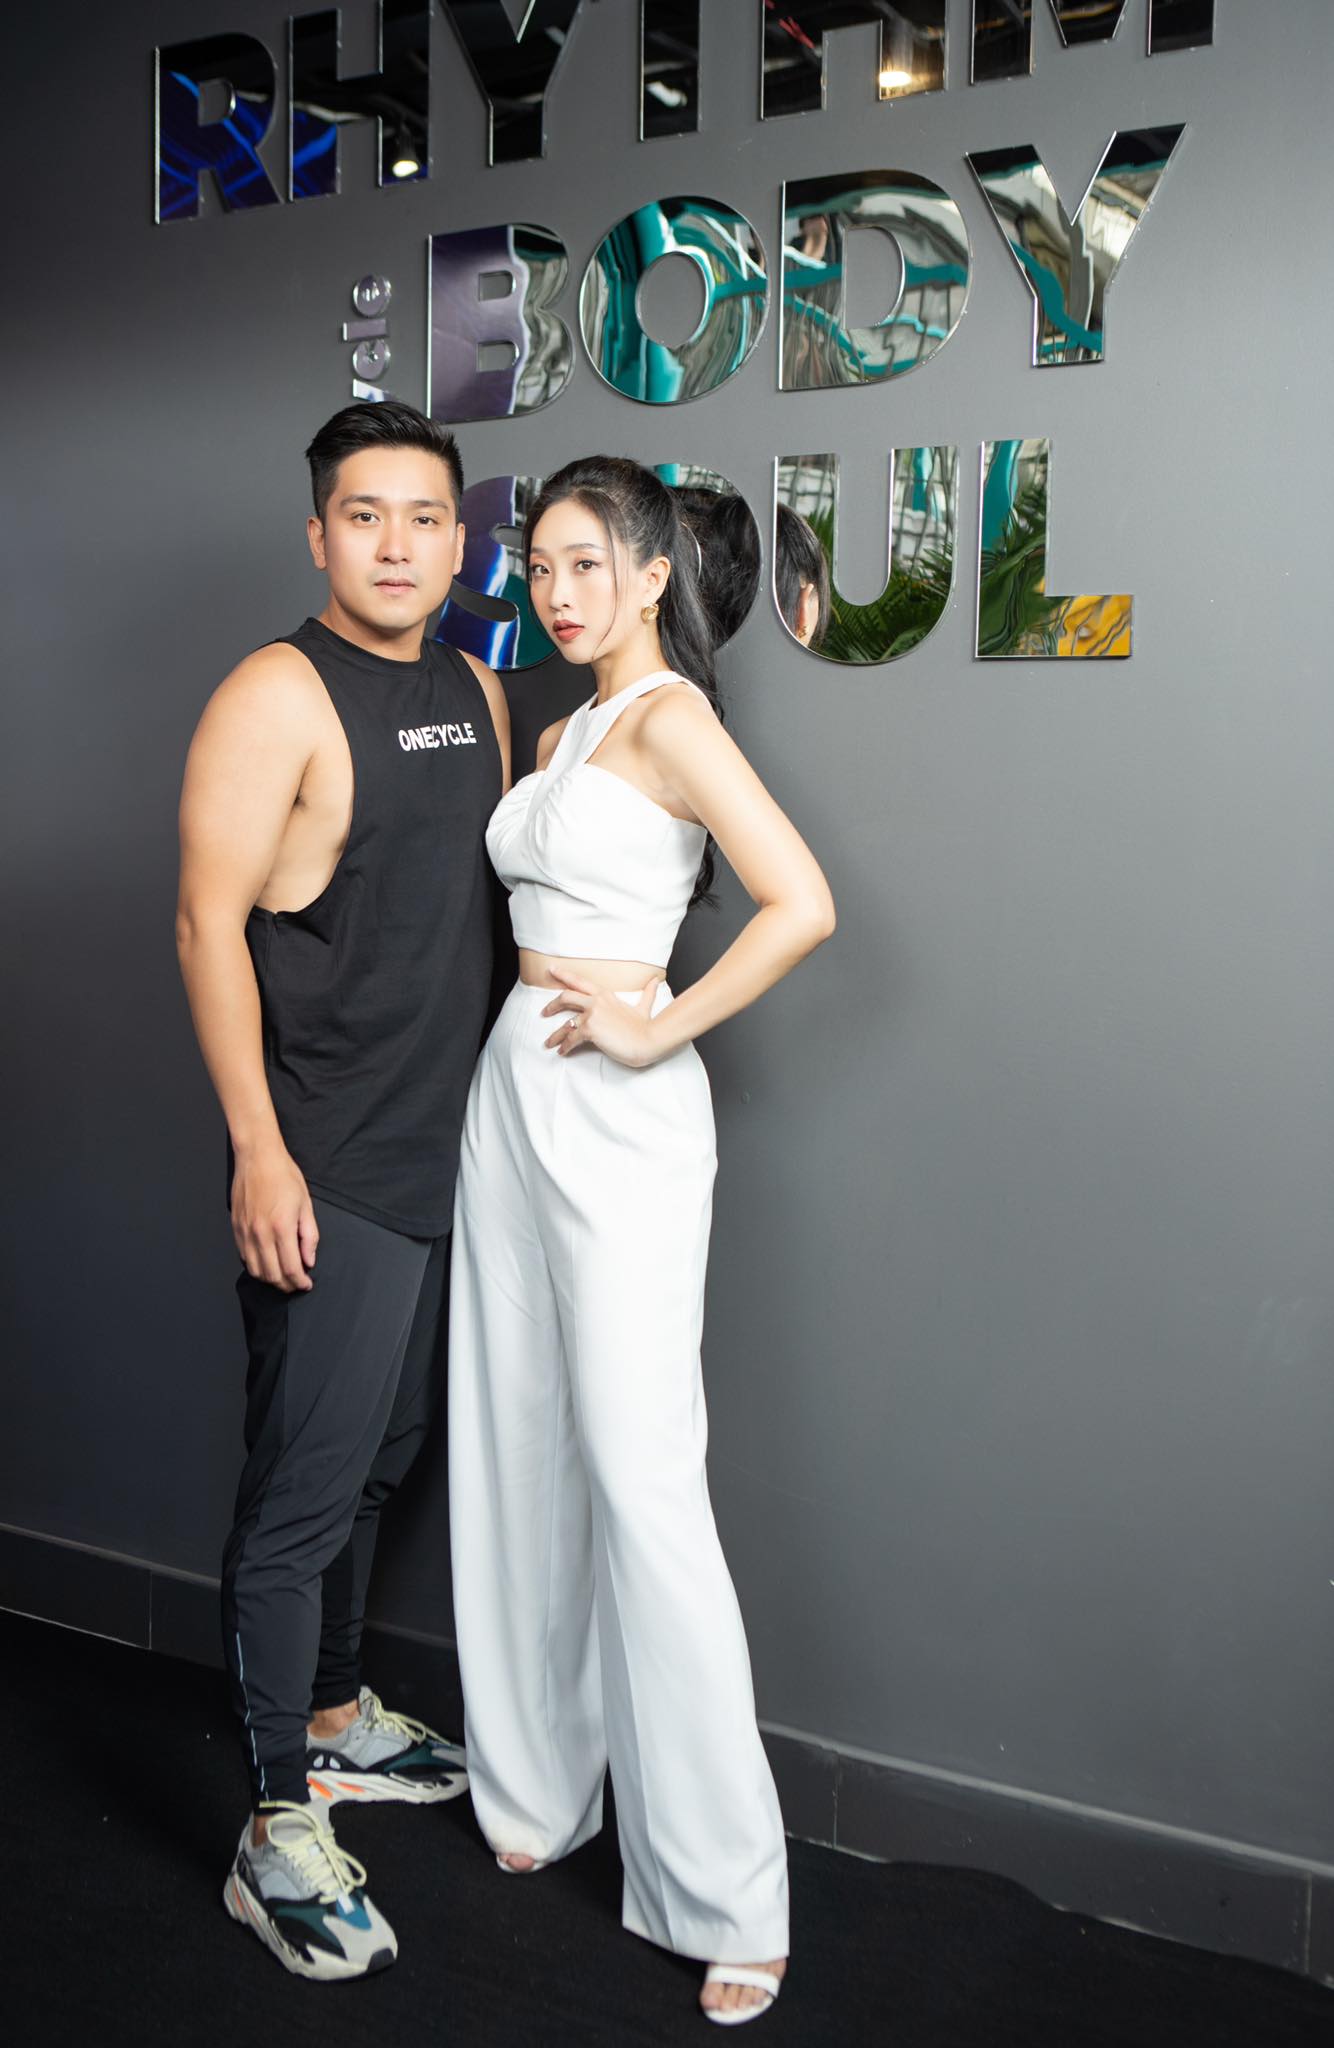 Liêu Hà Trinh hỗ trợ chồng Việt kiều khởi nghiệp dự án về thể thao tại Việt Nam - Ảnh 3.